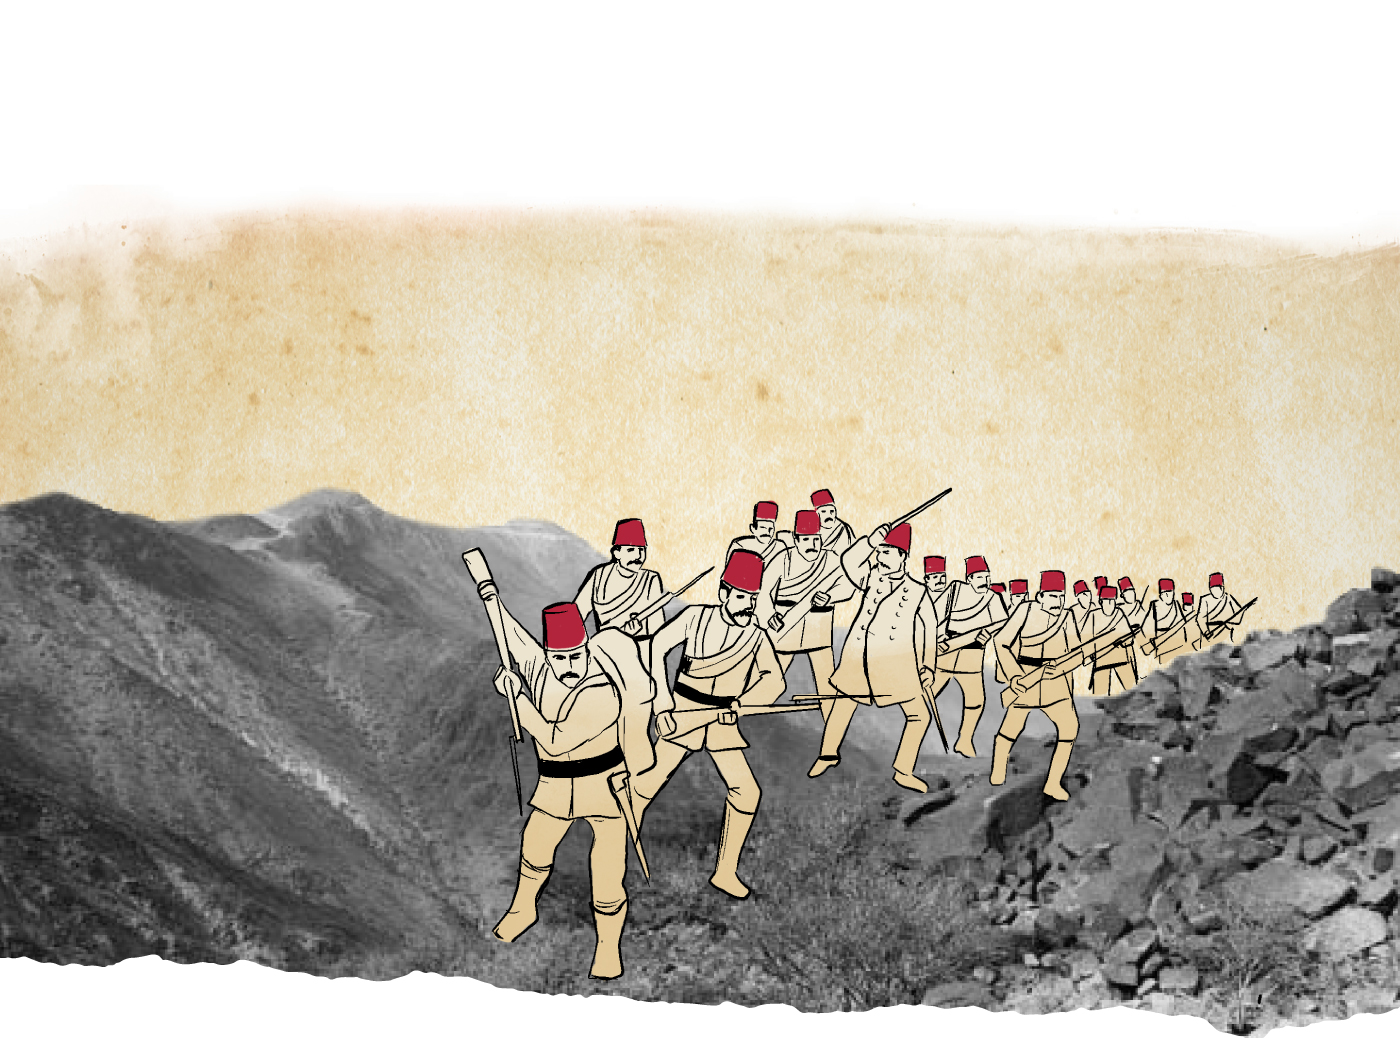 وقعت معركة وادي زهران عام